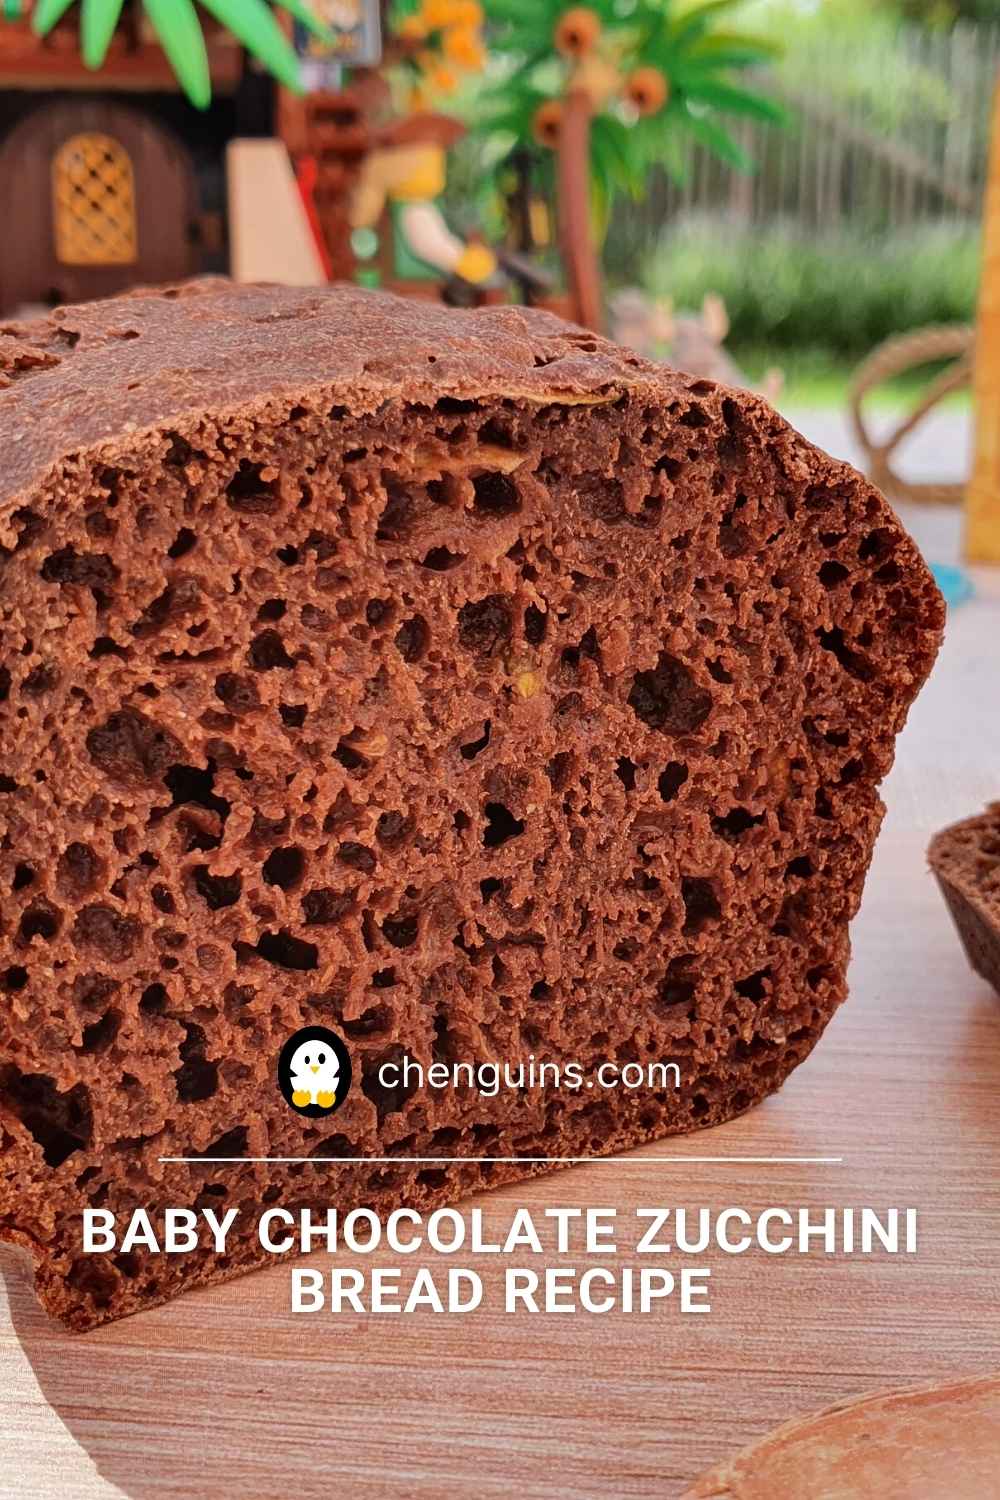 CHOCOLATE ZUCCHINI BREAD